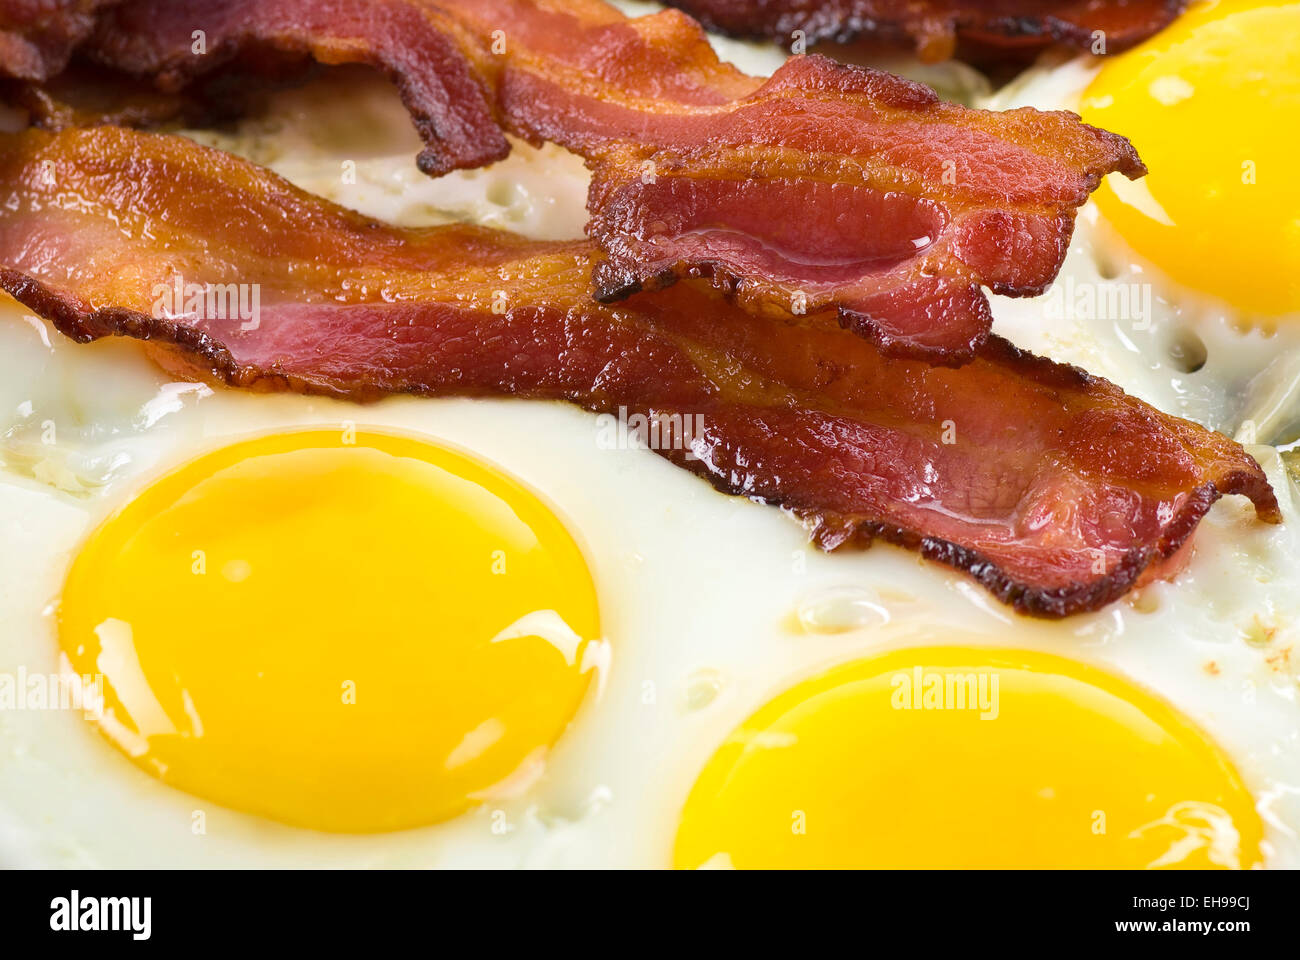 Cerrar bacon y huevos fritos. Foto de stock